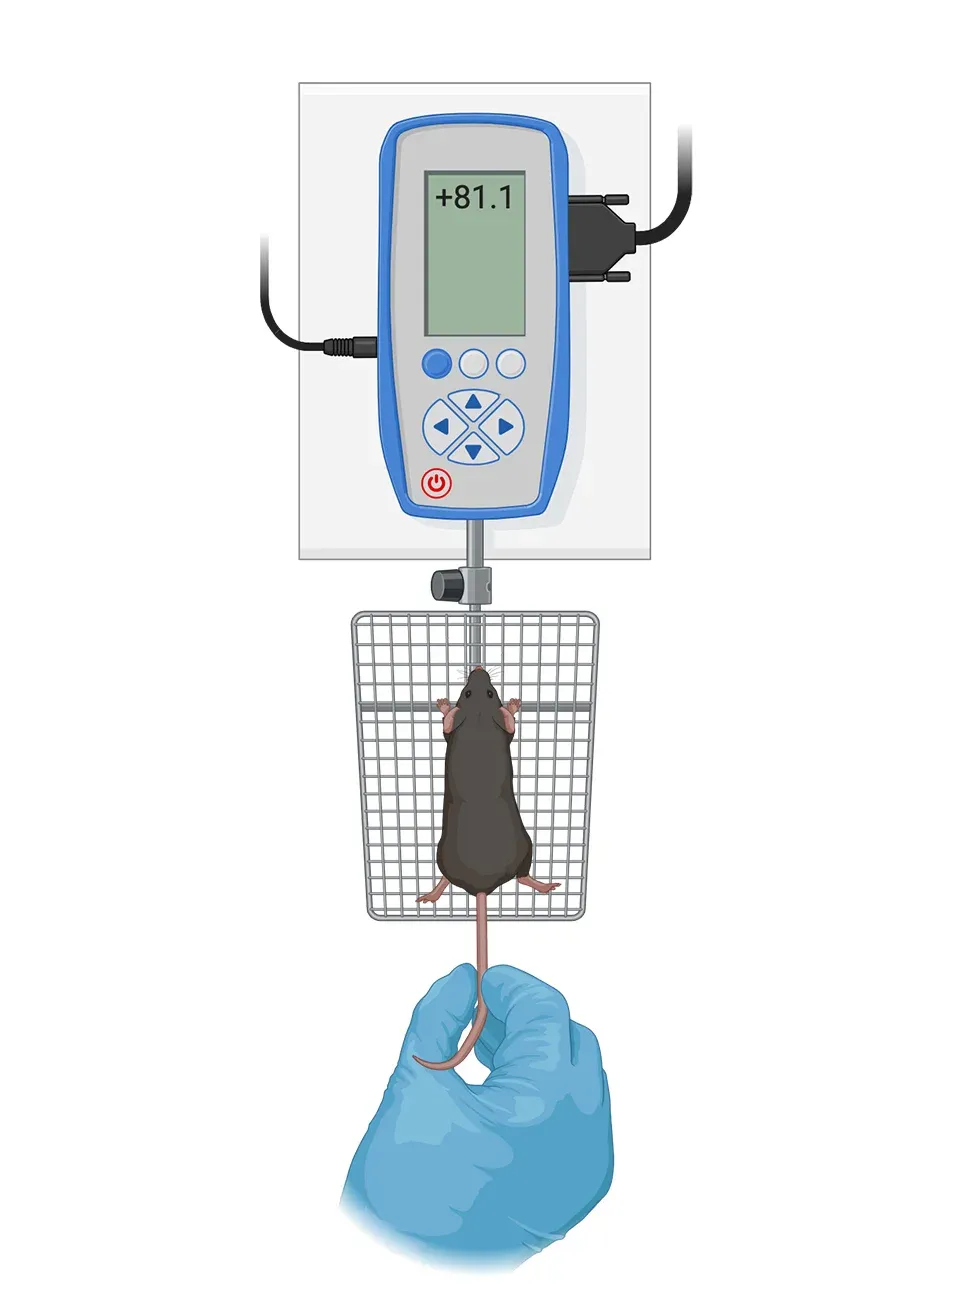 Une souris de laboratoire, à l'intérieur d'un dispositif expérimental pour la fonction motrice - force de préhension